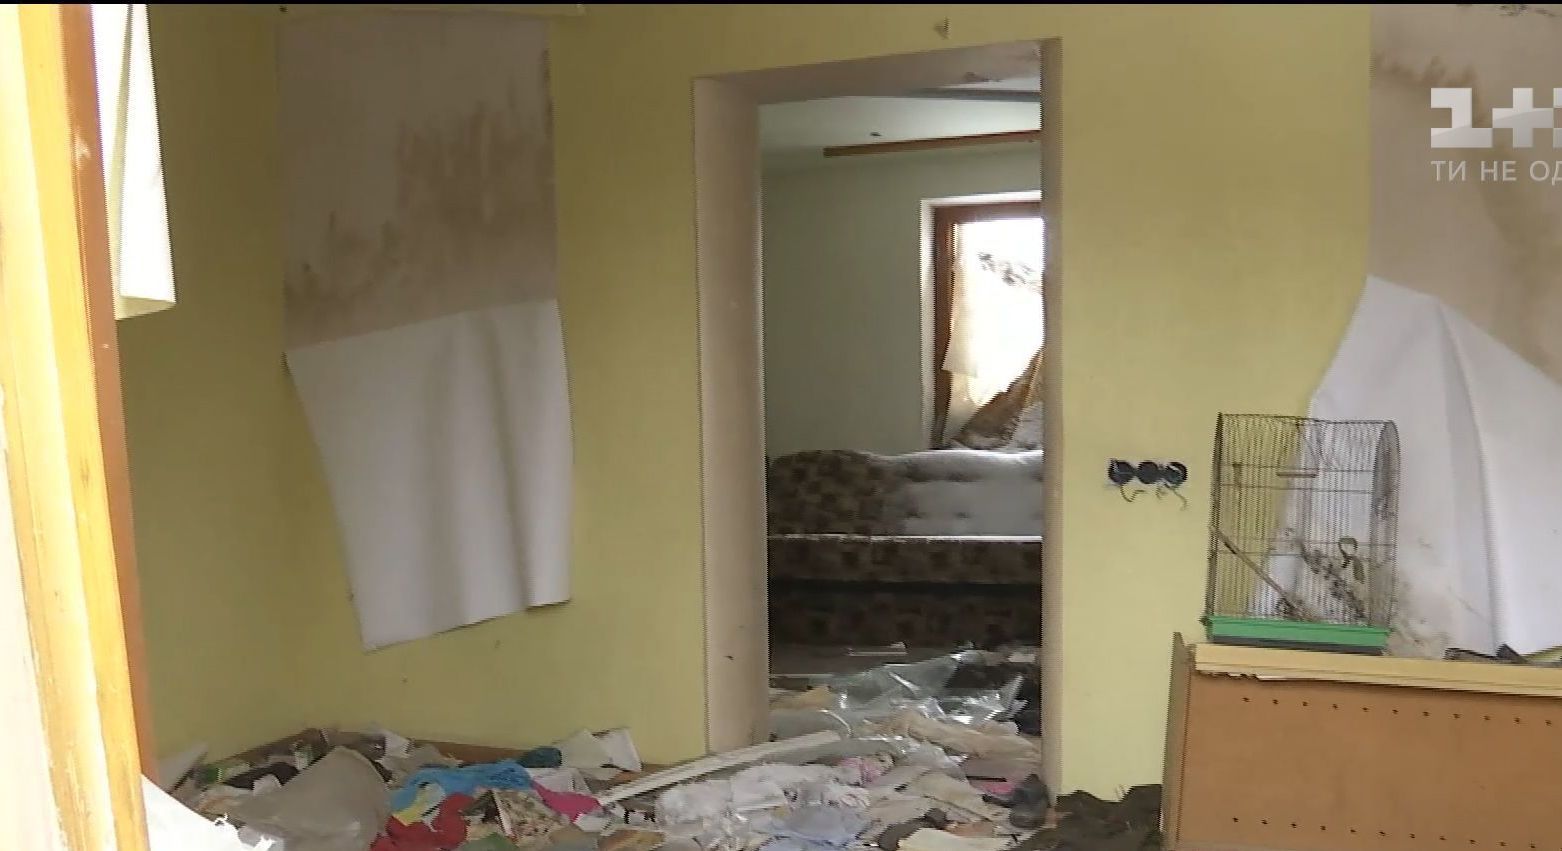 Власники обгорілих будинків у Пісках не можуть отримати допомогу за зруйноване житло